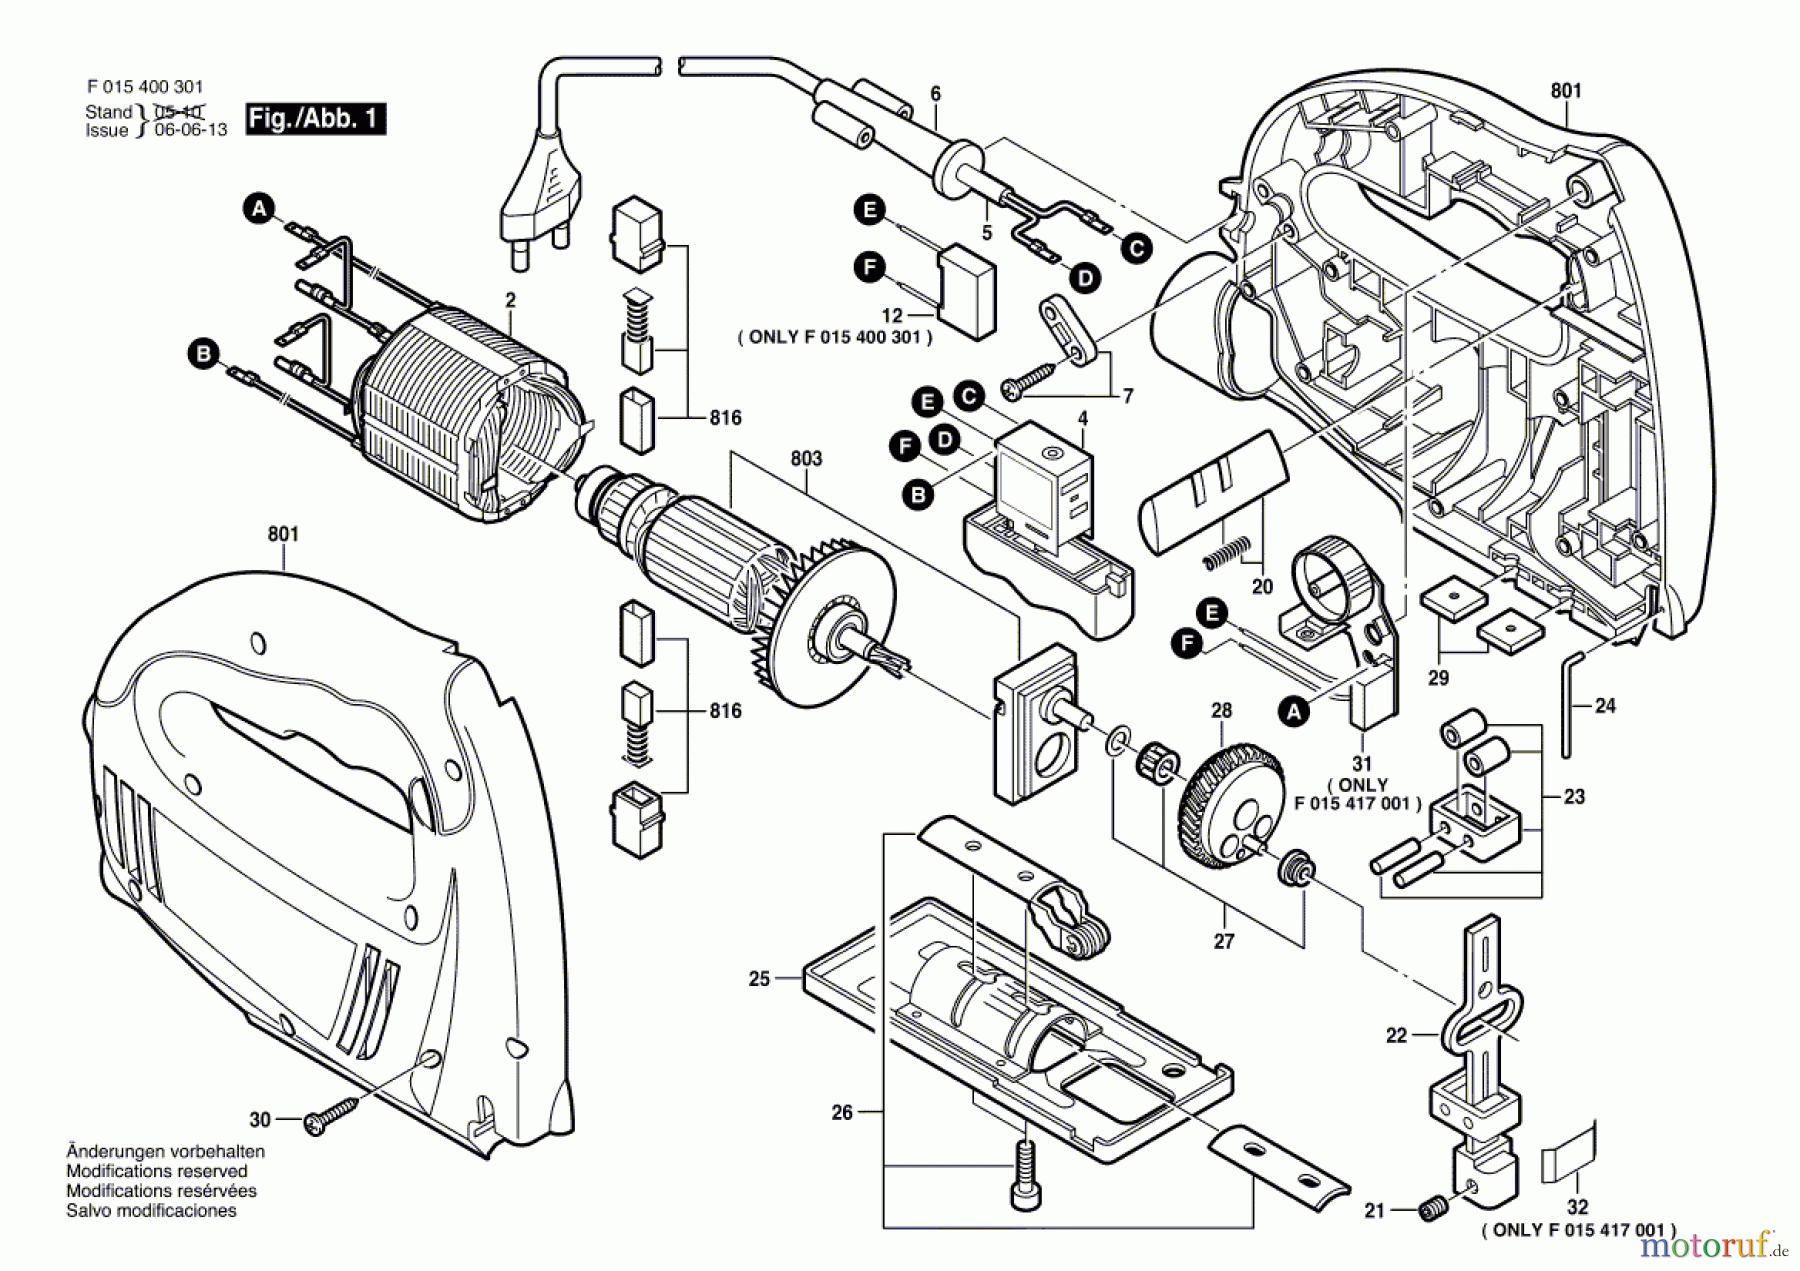  Bosch Werkzeug Stichsäge 4170 Seite 1